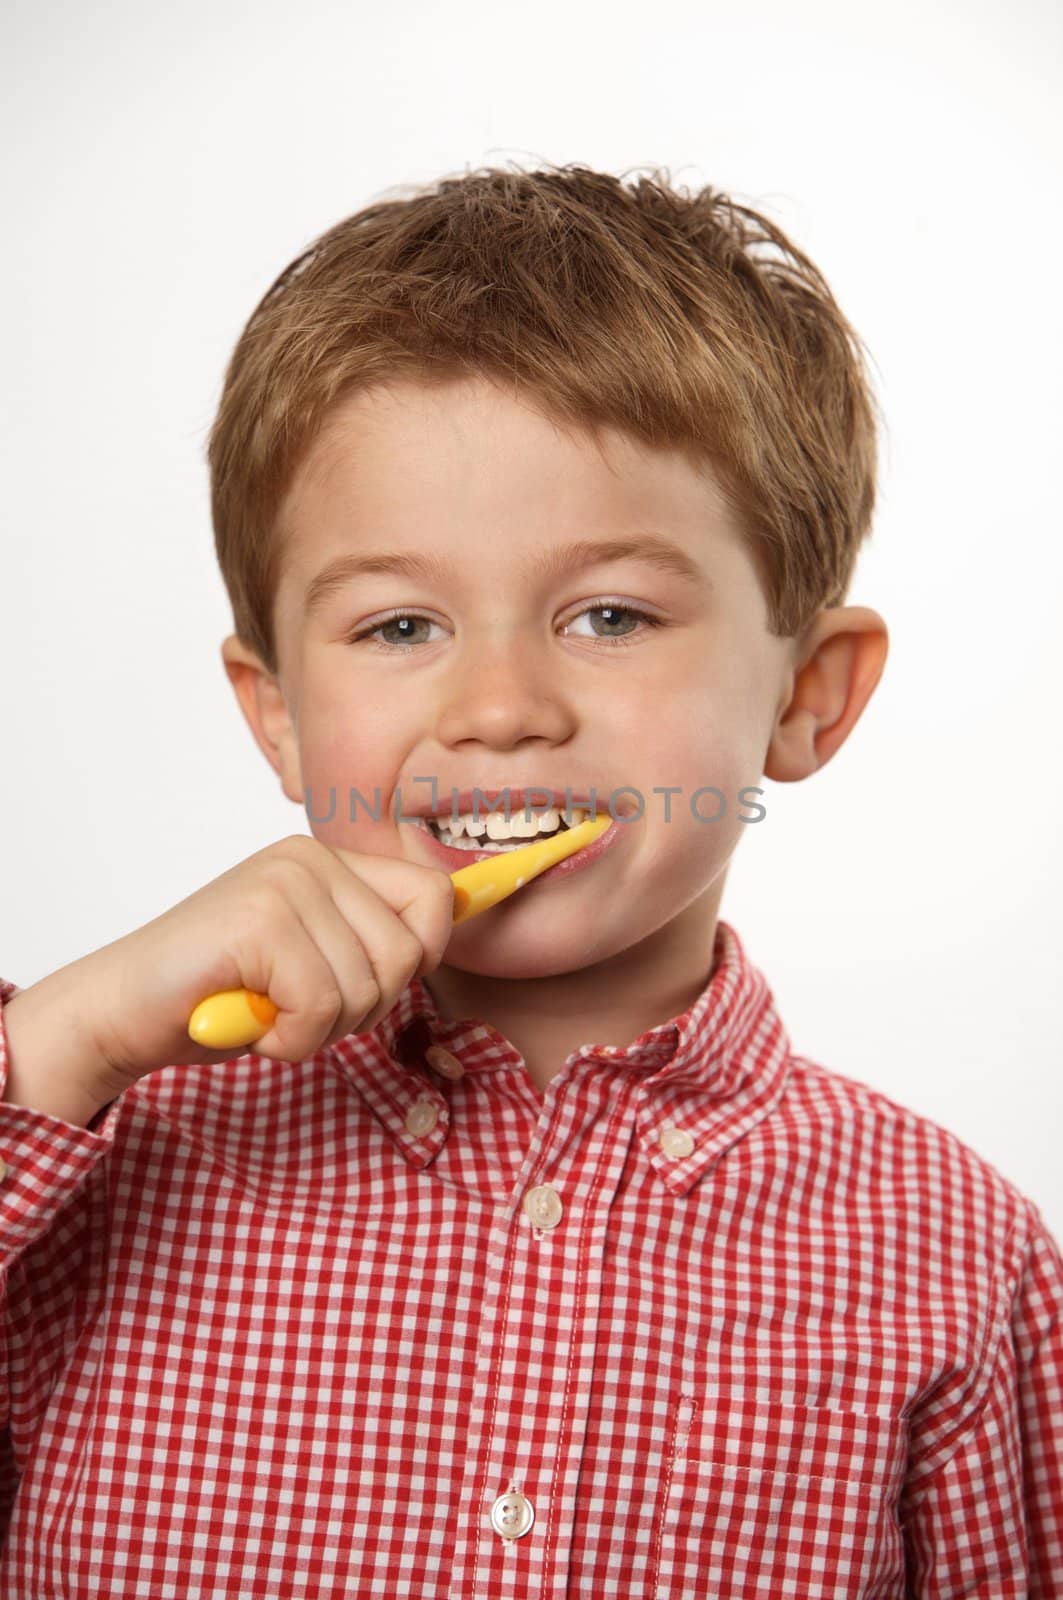 young boy brushing teeth by RainerPlendl